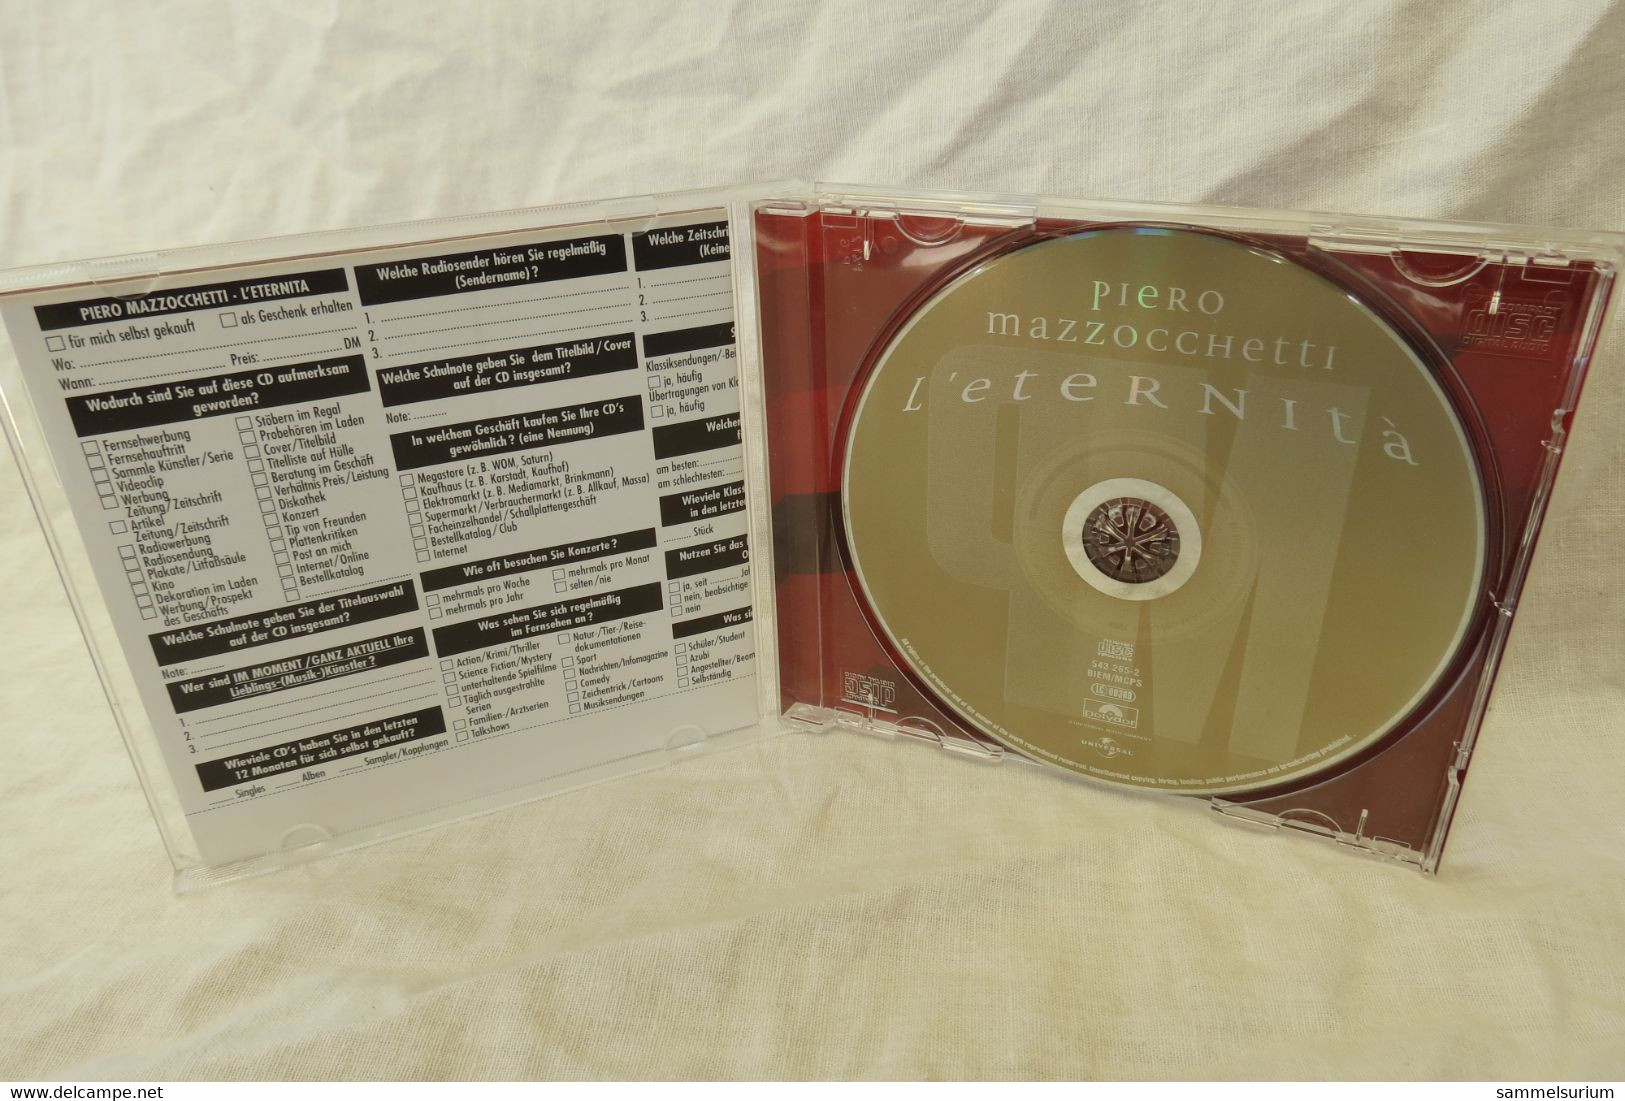 CD Piero Mazzocchetti "L'eternità" - Andere - Italiaans